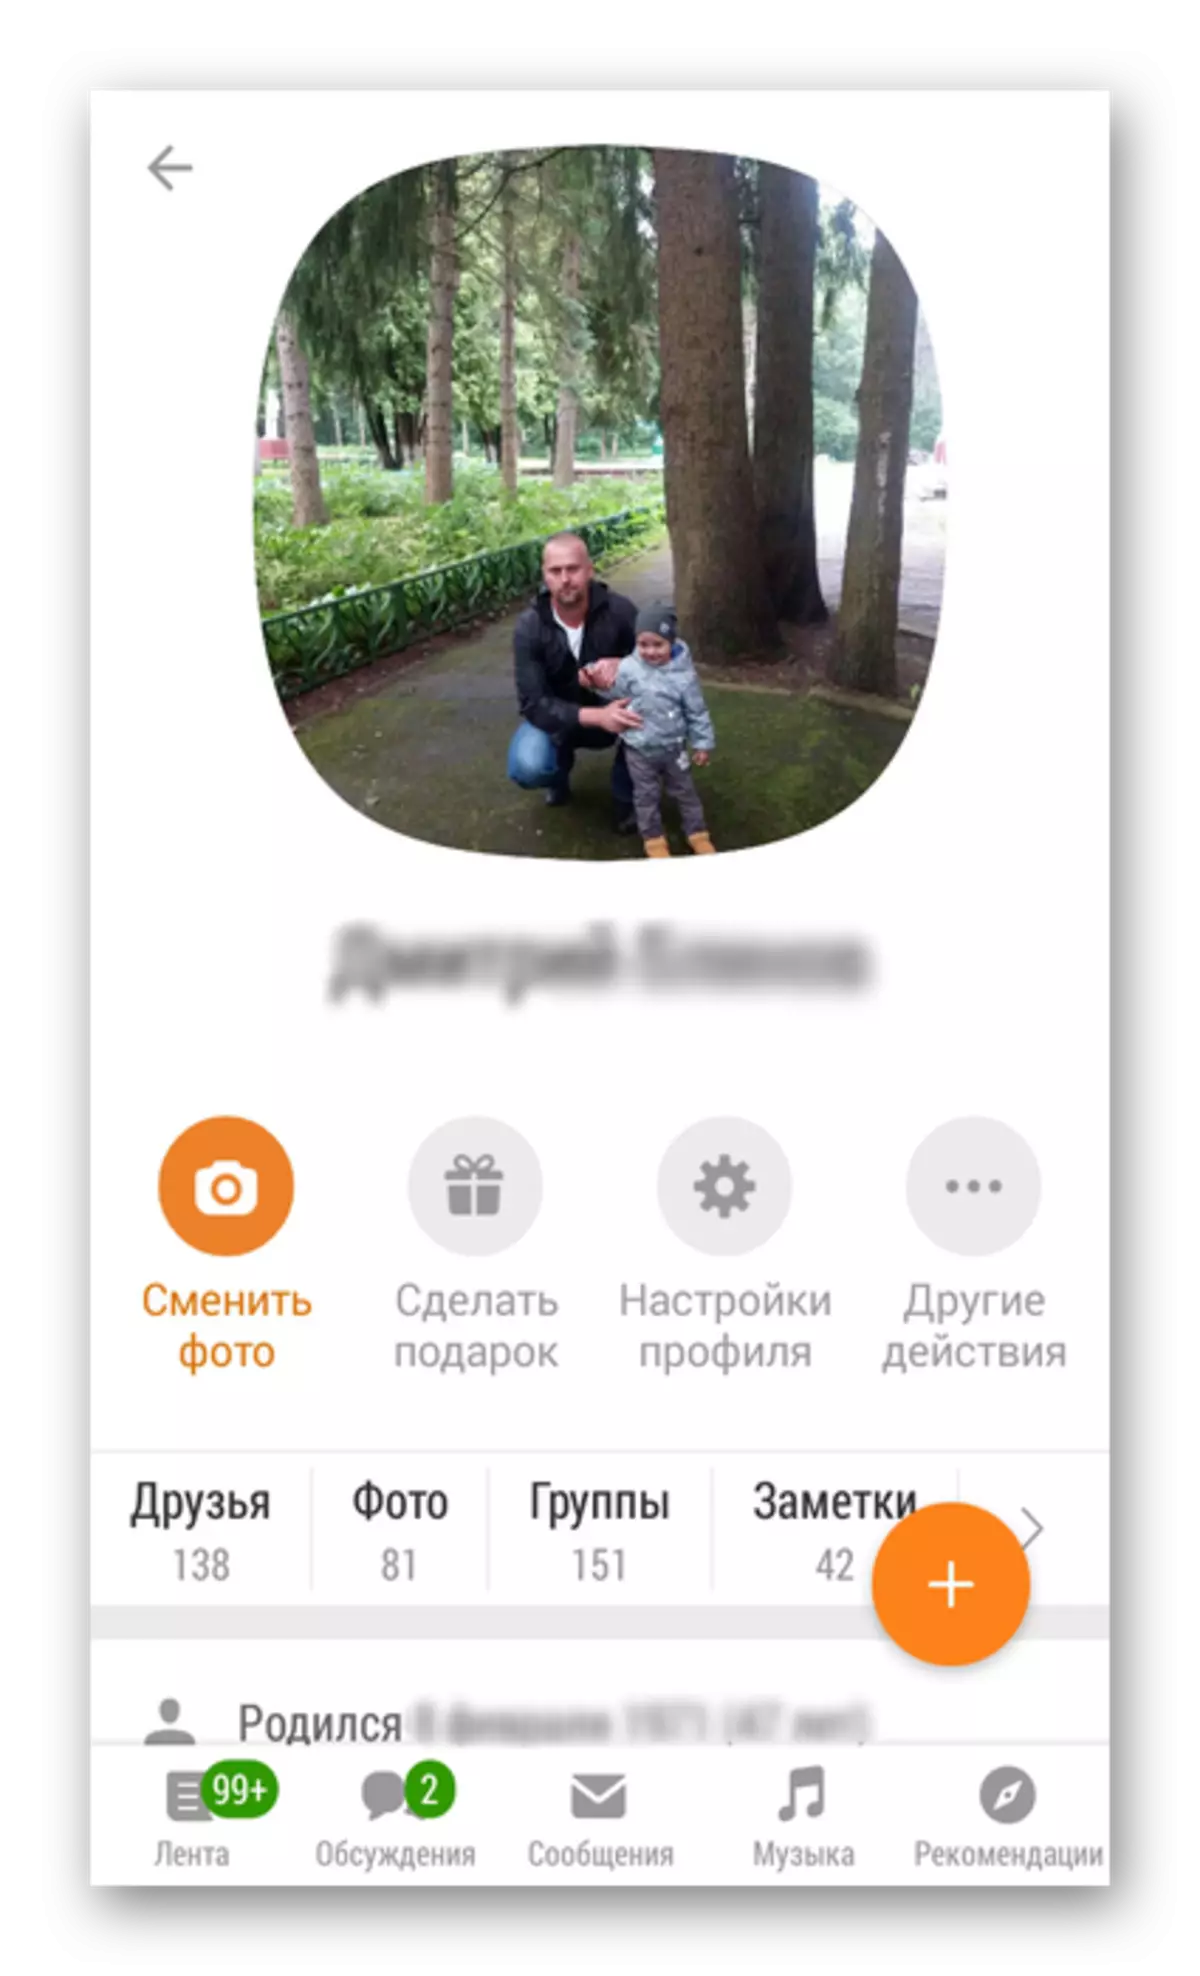 الملف الشخصي افتتح في التطبيق Odnoklassniki